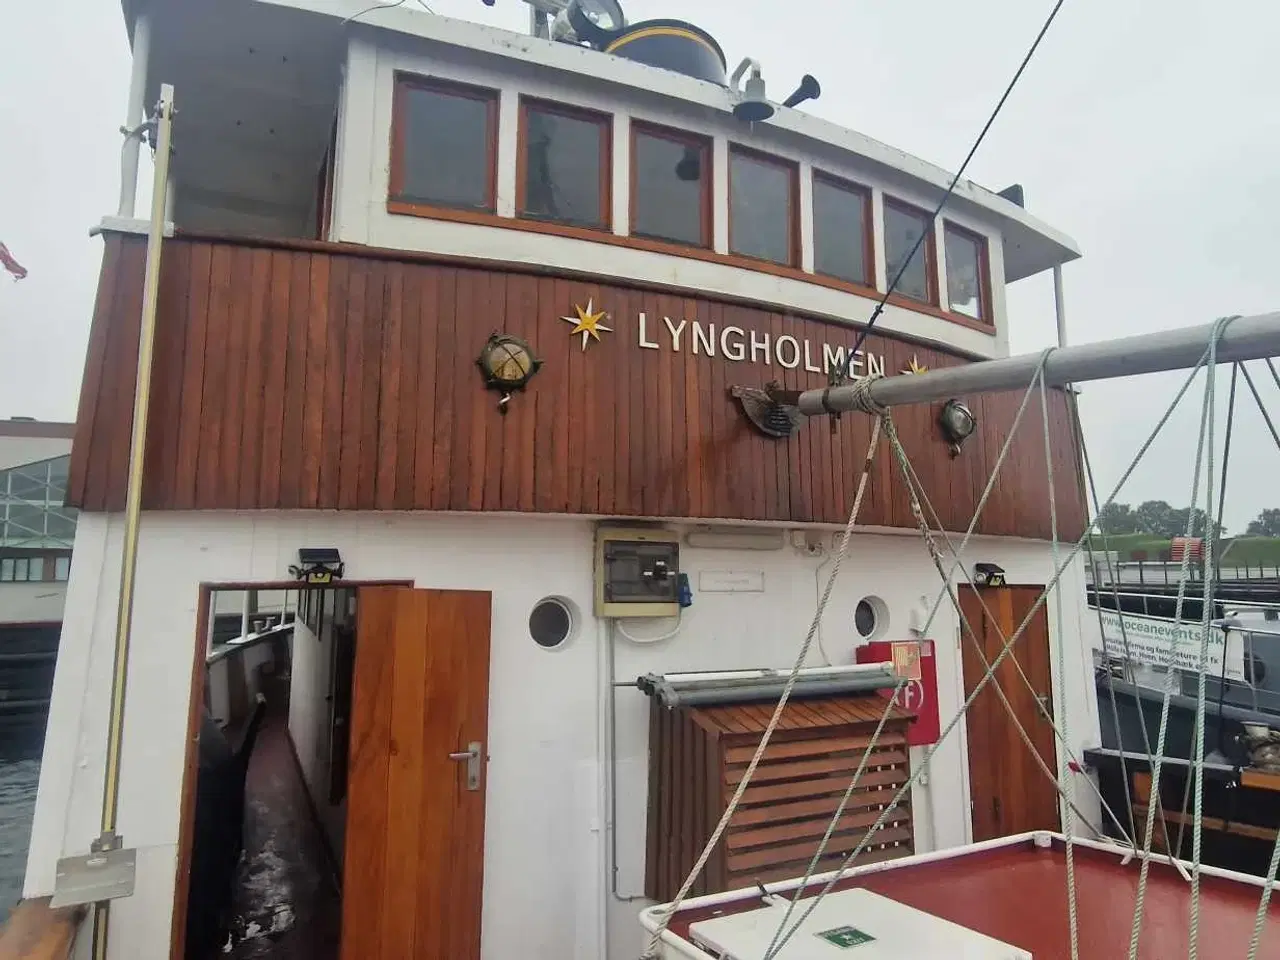 Billede 18 - Lyngholmen - Norsk bygget træskib med mange muligheder - Turbåd, bobåd, forening, vinklub eller noget helt andet?